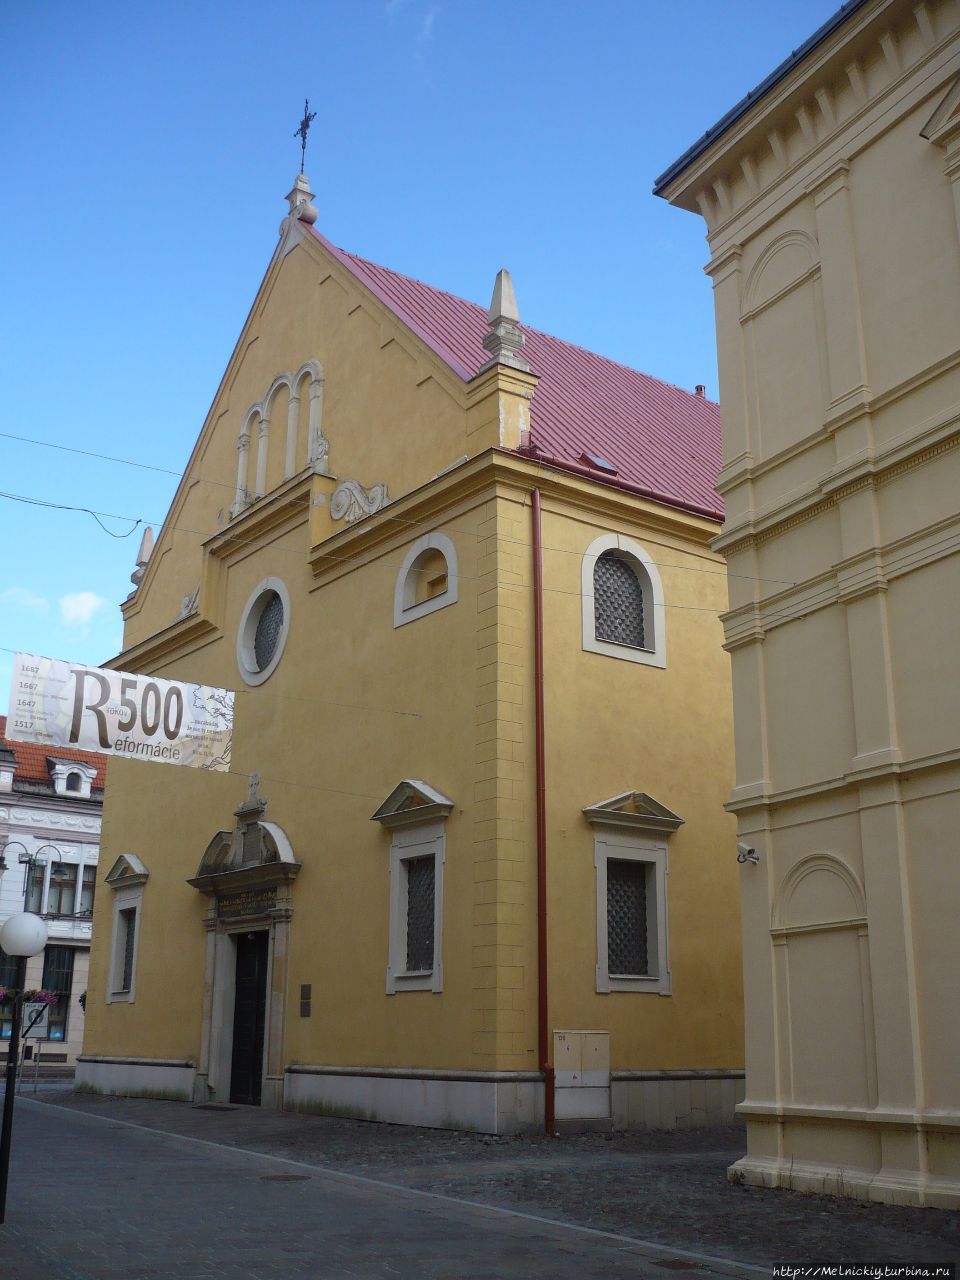 Короткая прогулка по центру старинного города Прешов, Словакия